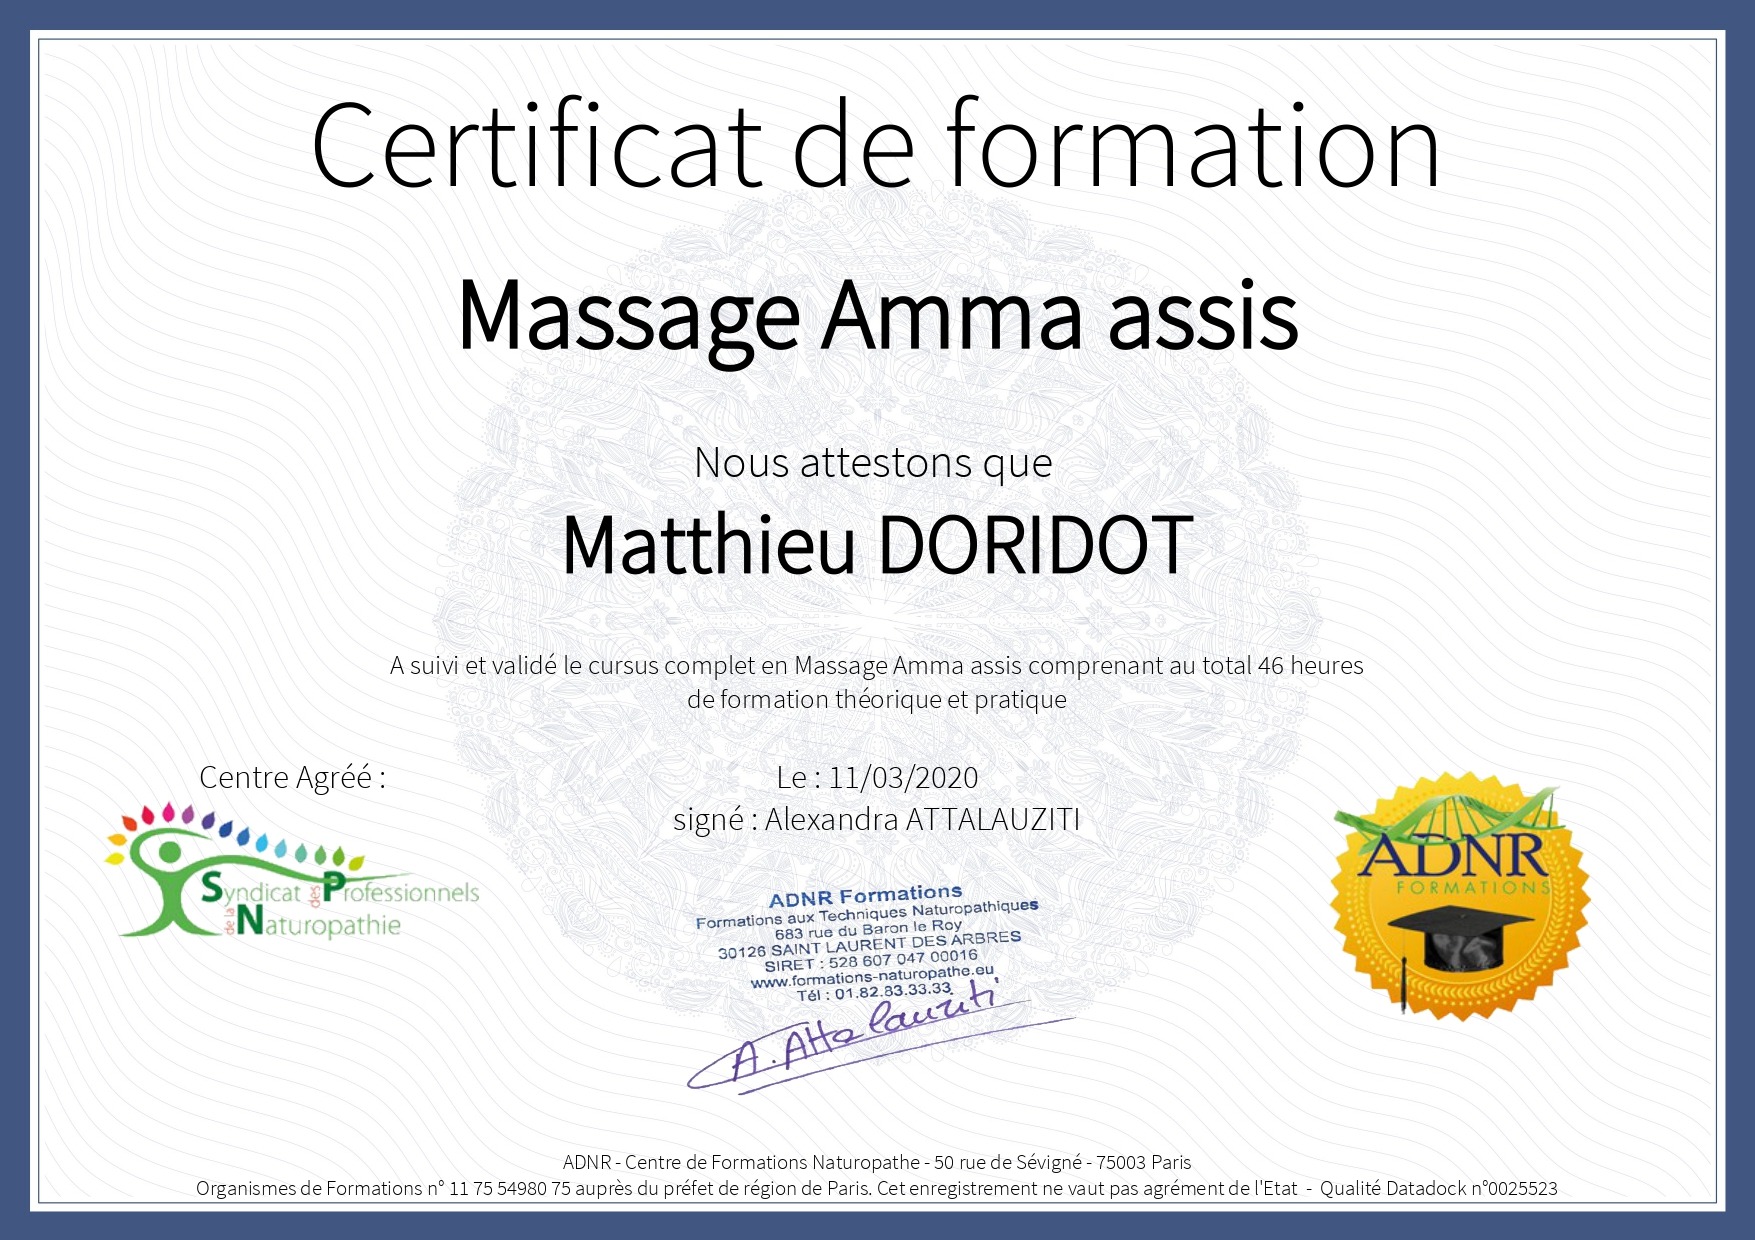 Certification DORIDOT Matthieu Amma assis